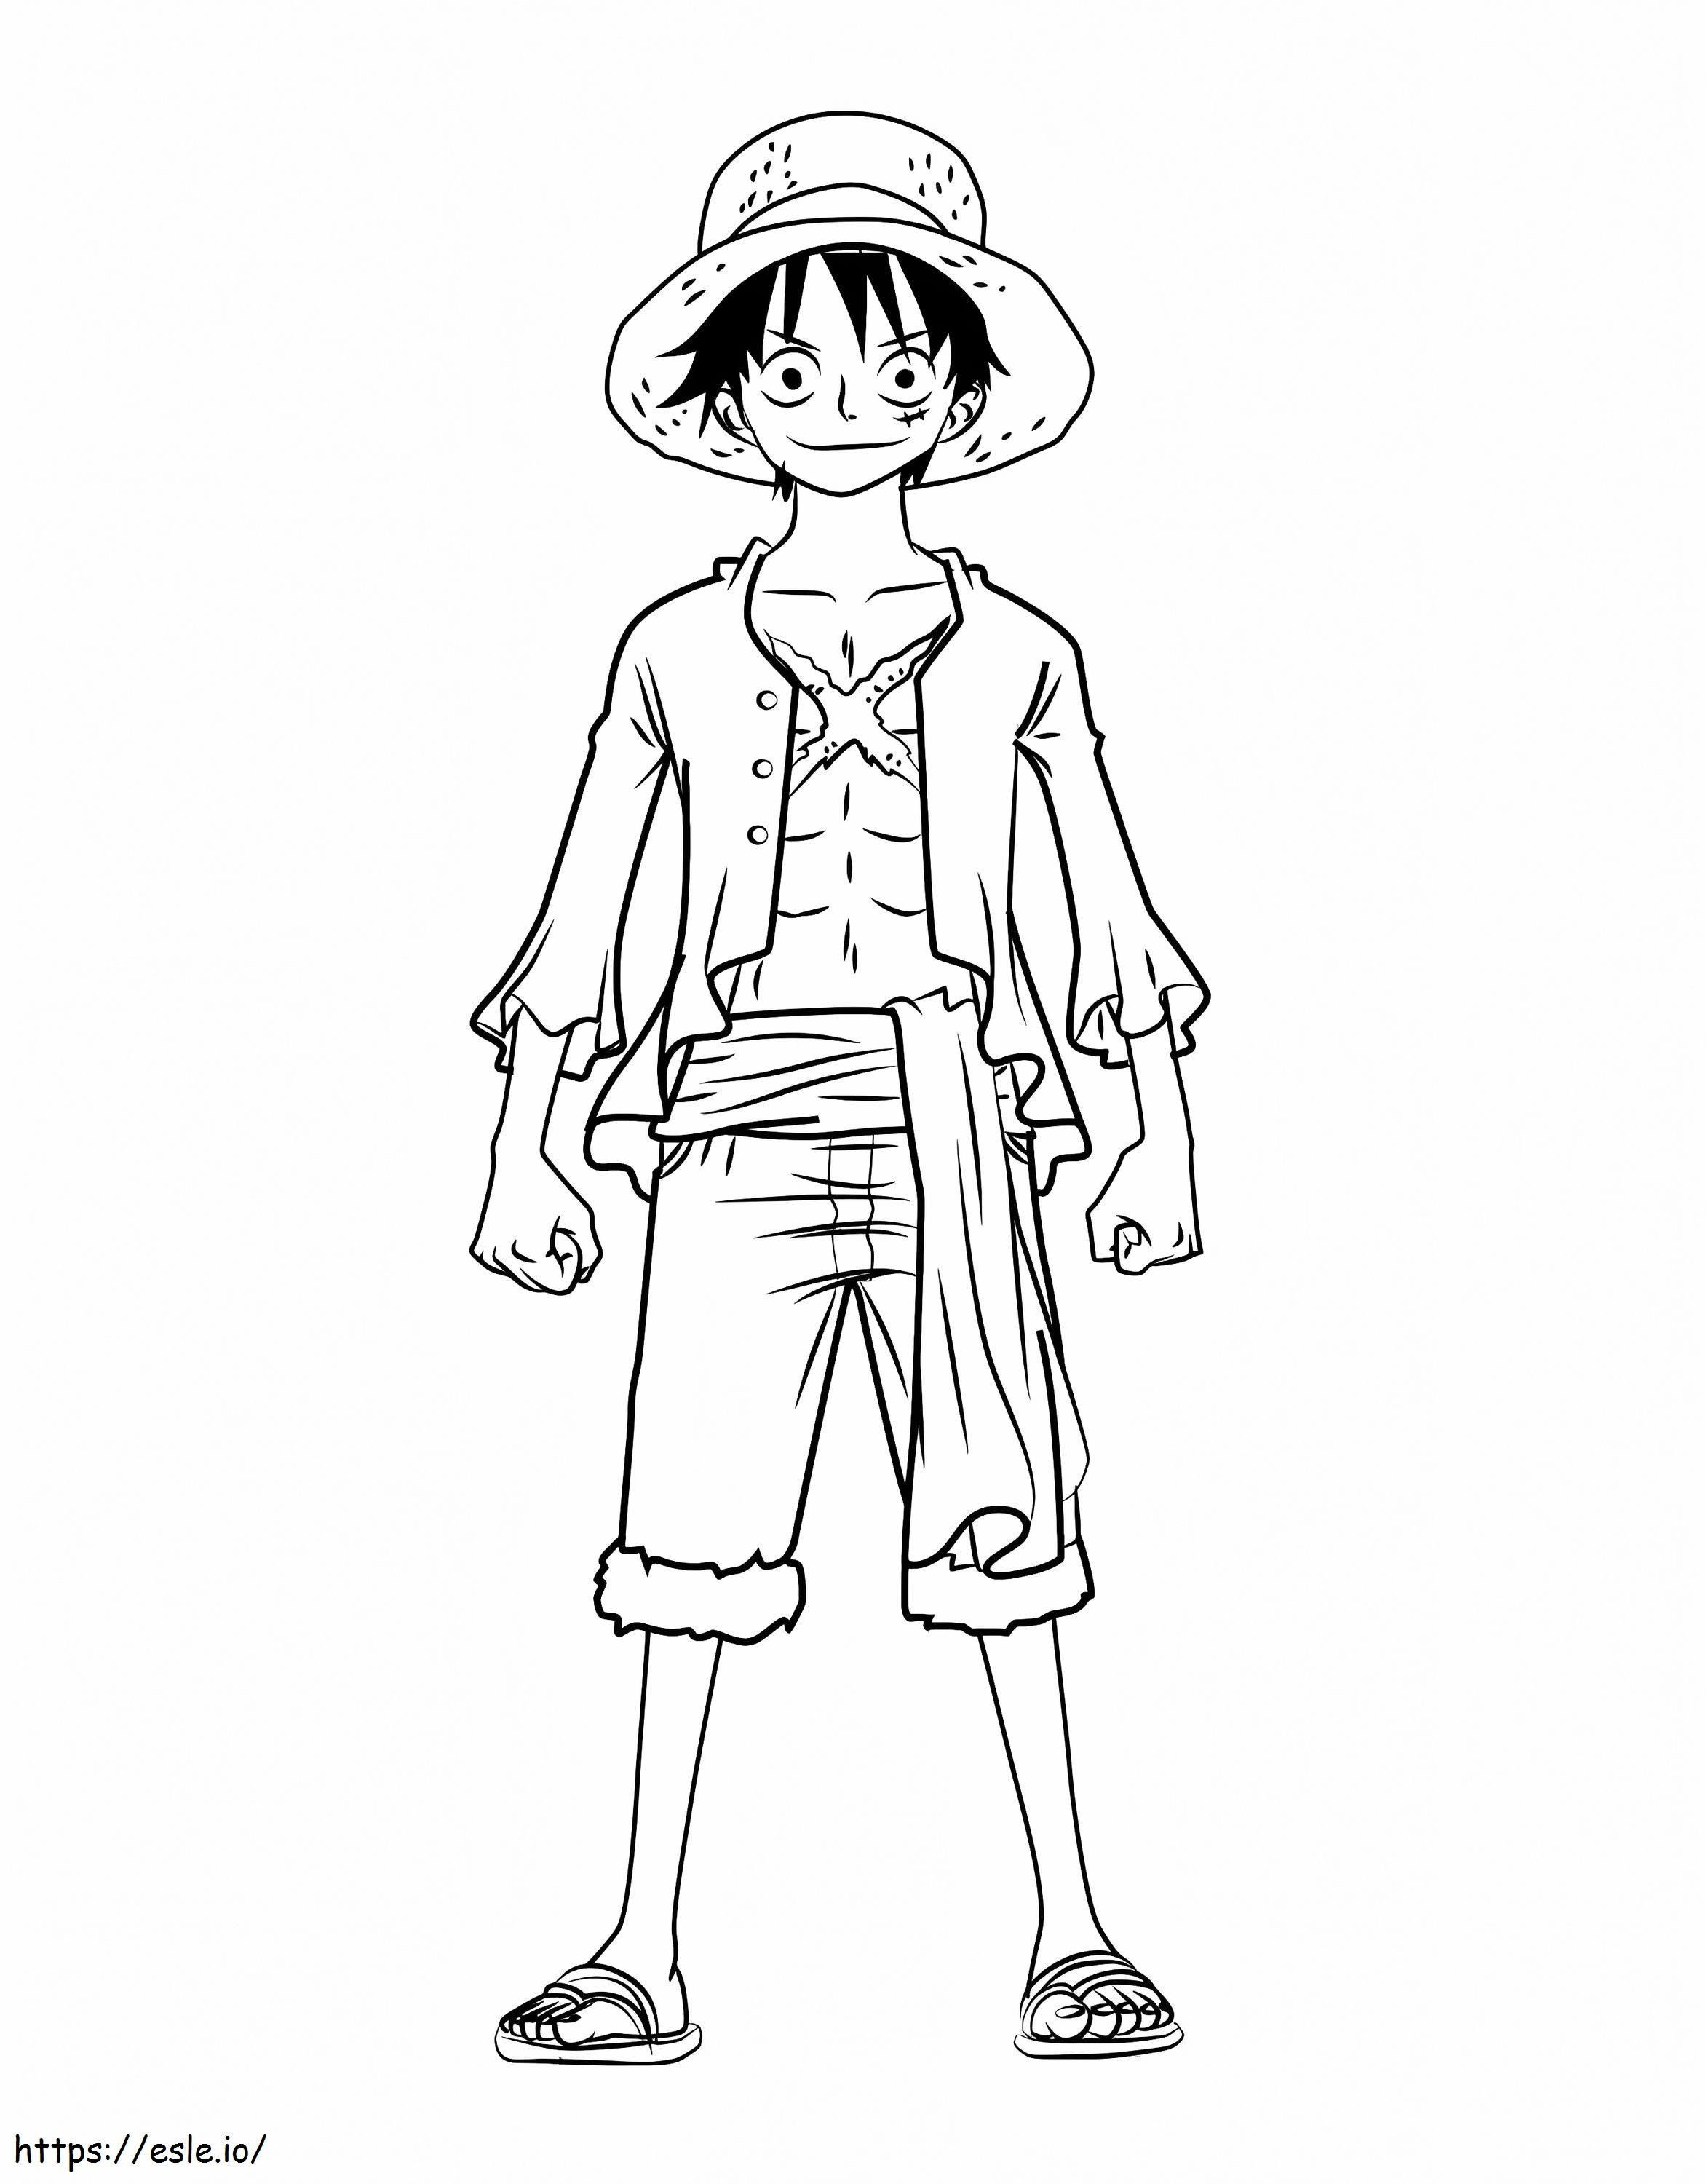 Como Desenhar O Luffy One Piece Passo a Passo